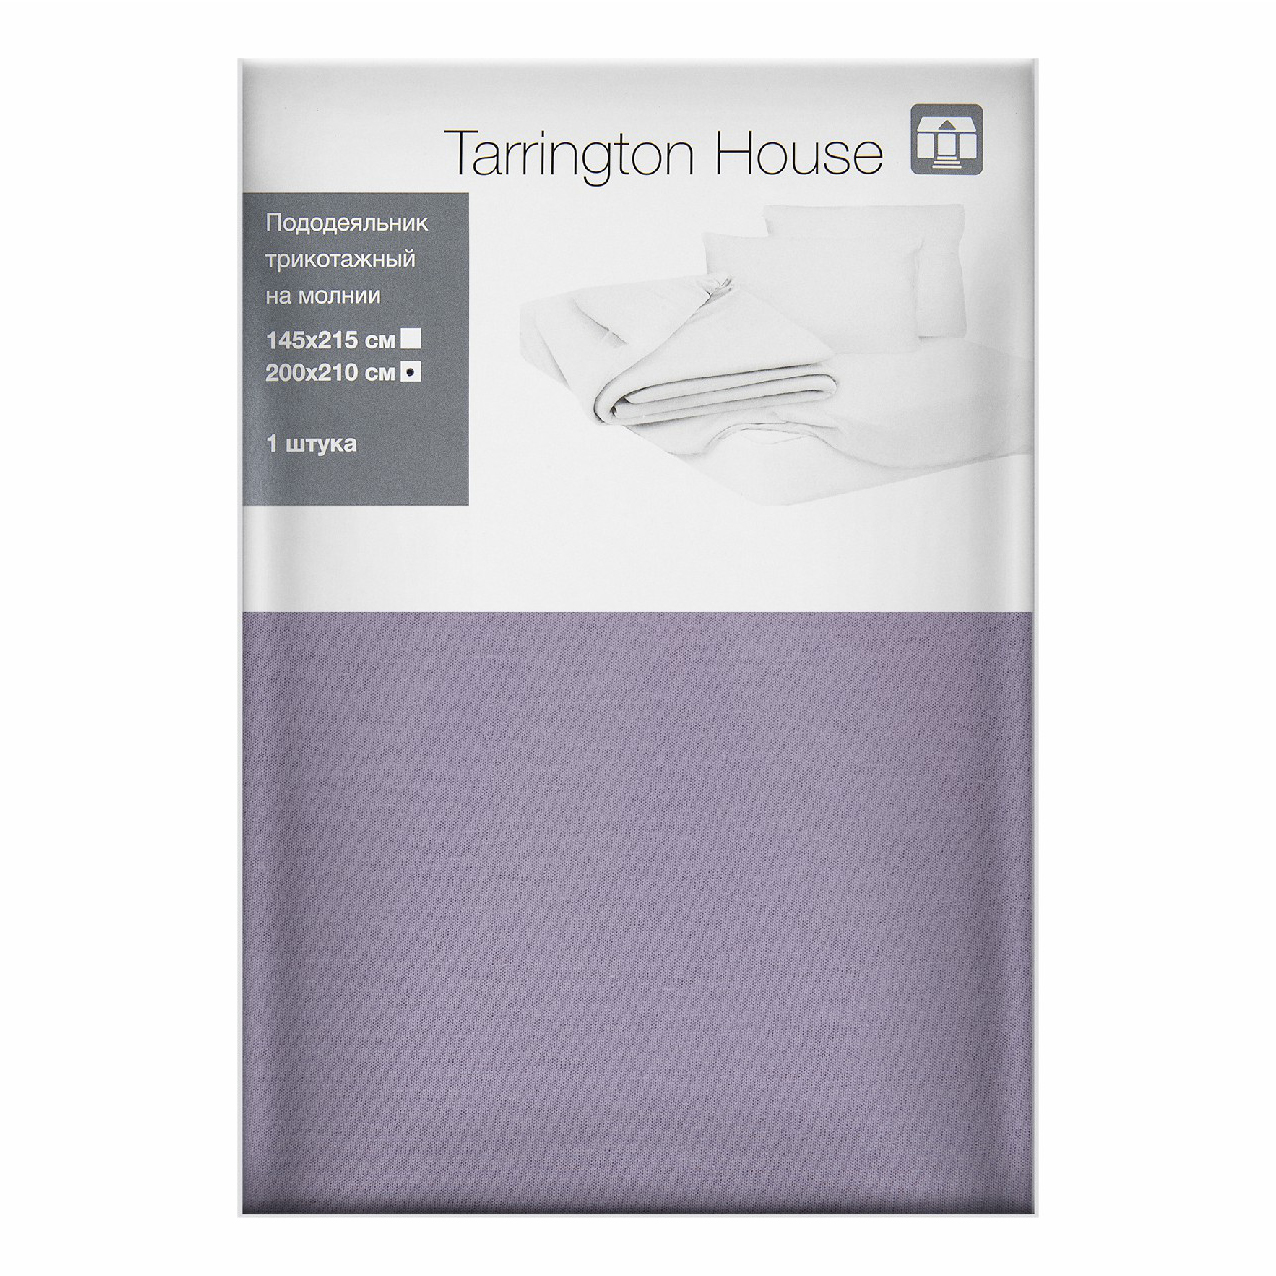 Пододеяльник Tarrington House двуспальный текстиль 200 x 210 см лиловый